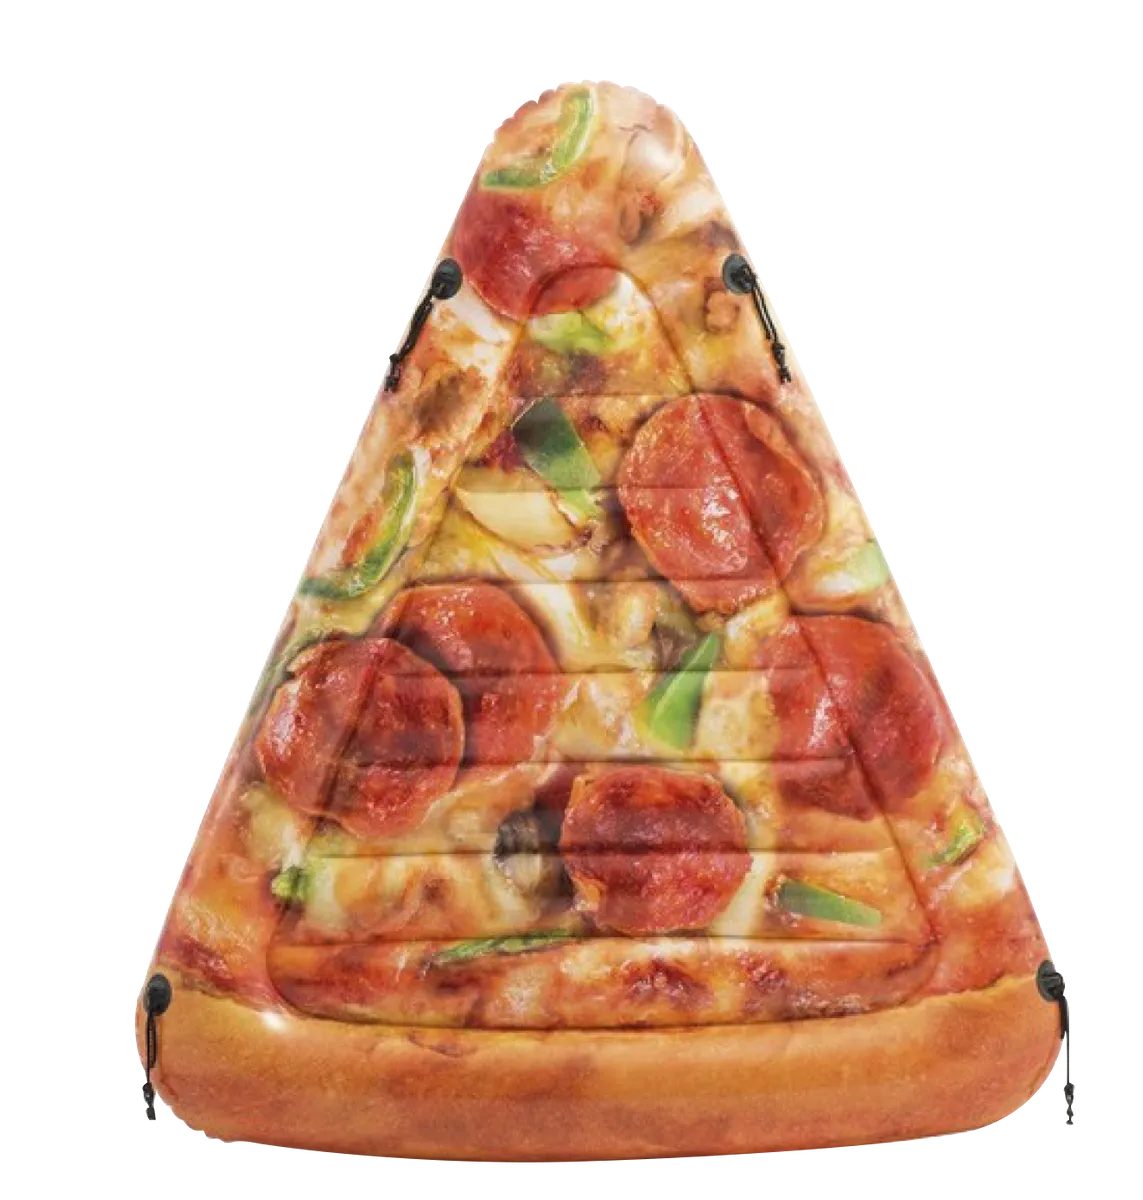 MATELAS GONFLABLE PART DE PIZZA